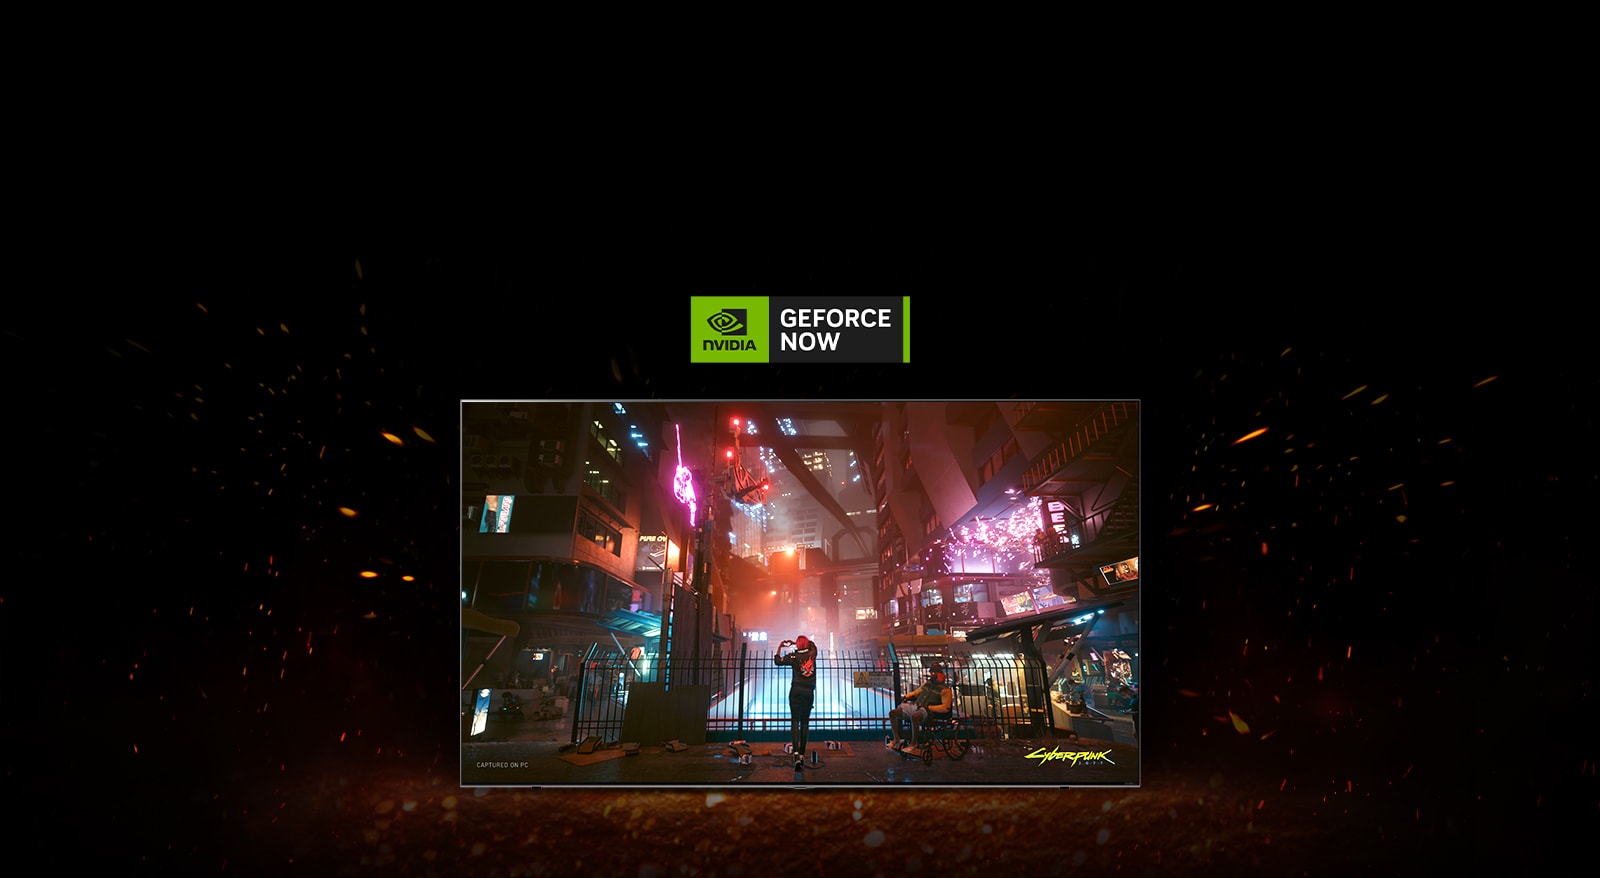 Redzamas liesmas ap televizoru un Cyberpunk spēle ekrānā. Televizora augšā redzams Geforce now logotips.